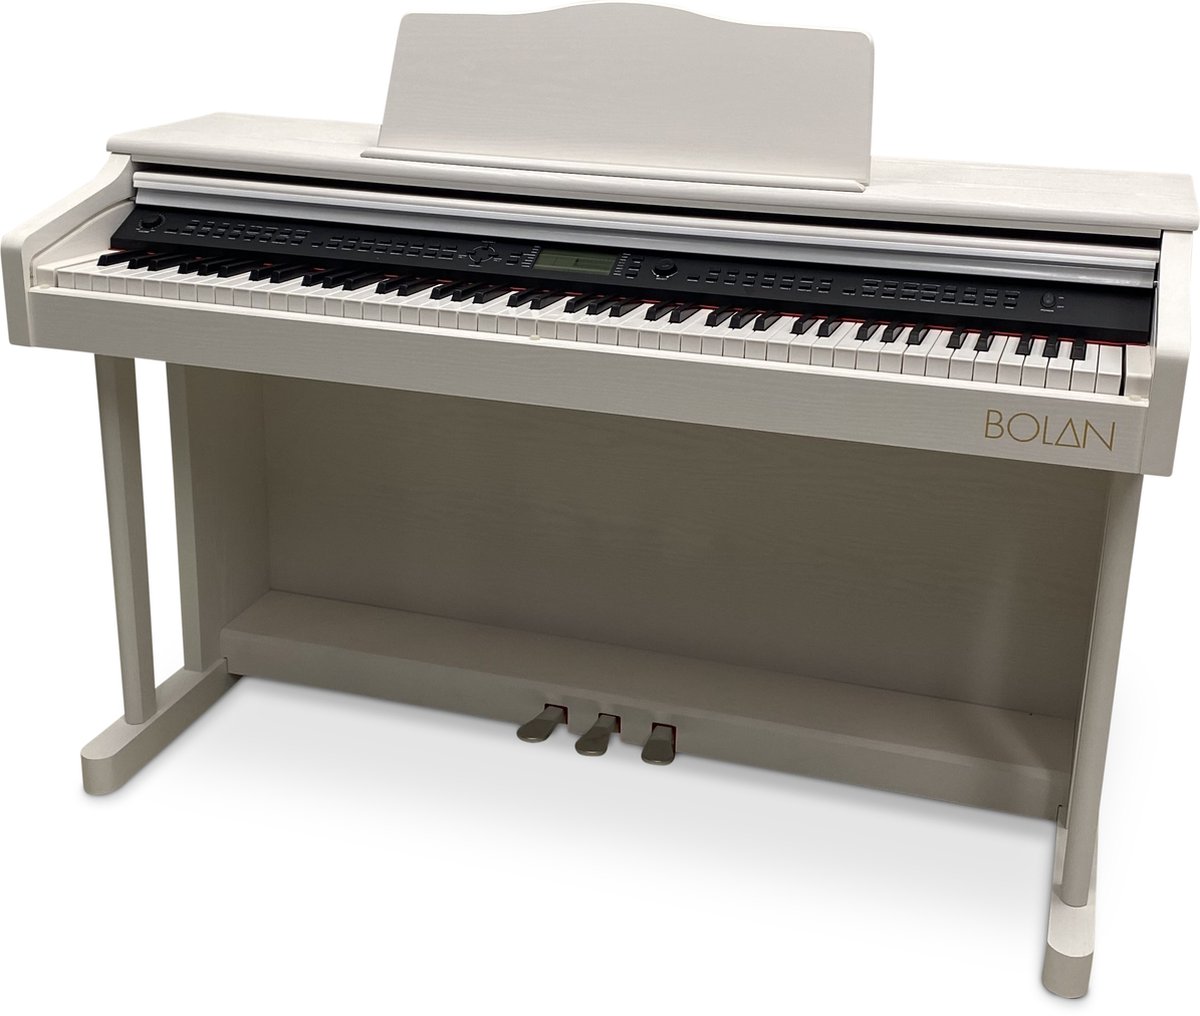 Bolan CP-2 digitale piano wit - home piano met meubel - beginnerspiano - elektrische piano 88 toetsen - piano met veel geluiden en ritmebegeleiding